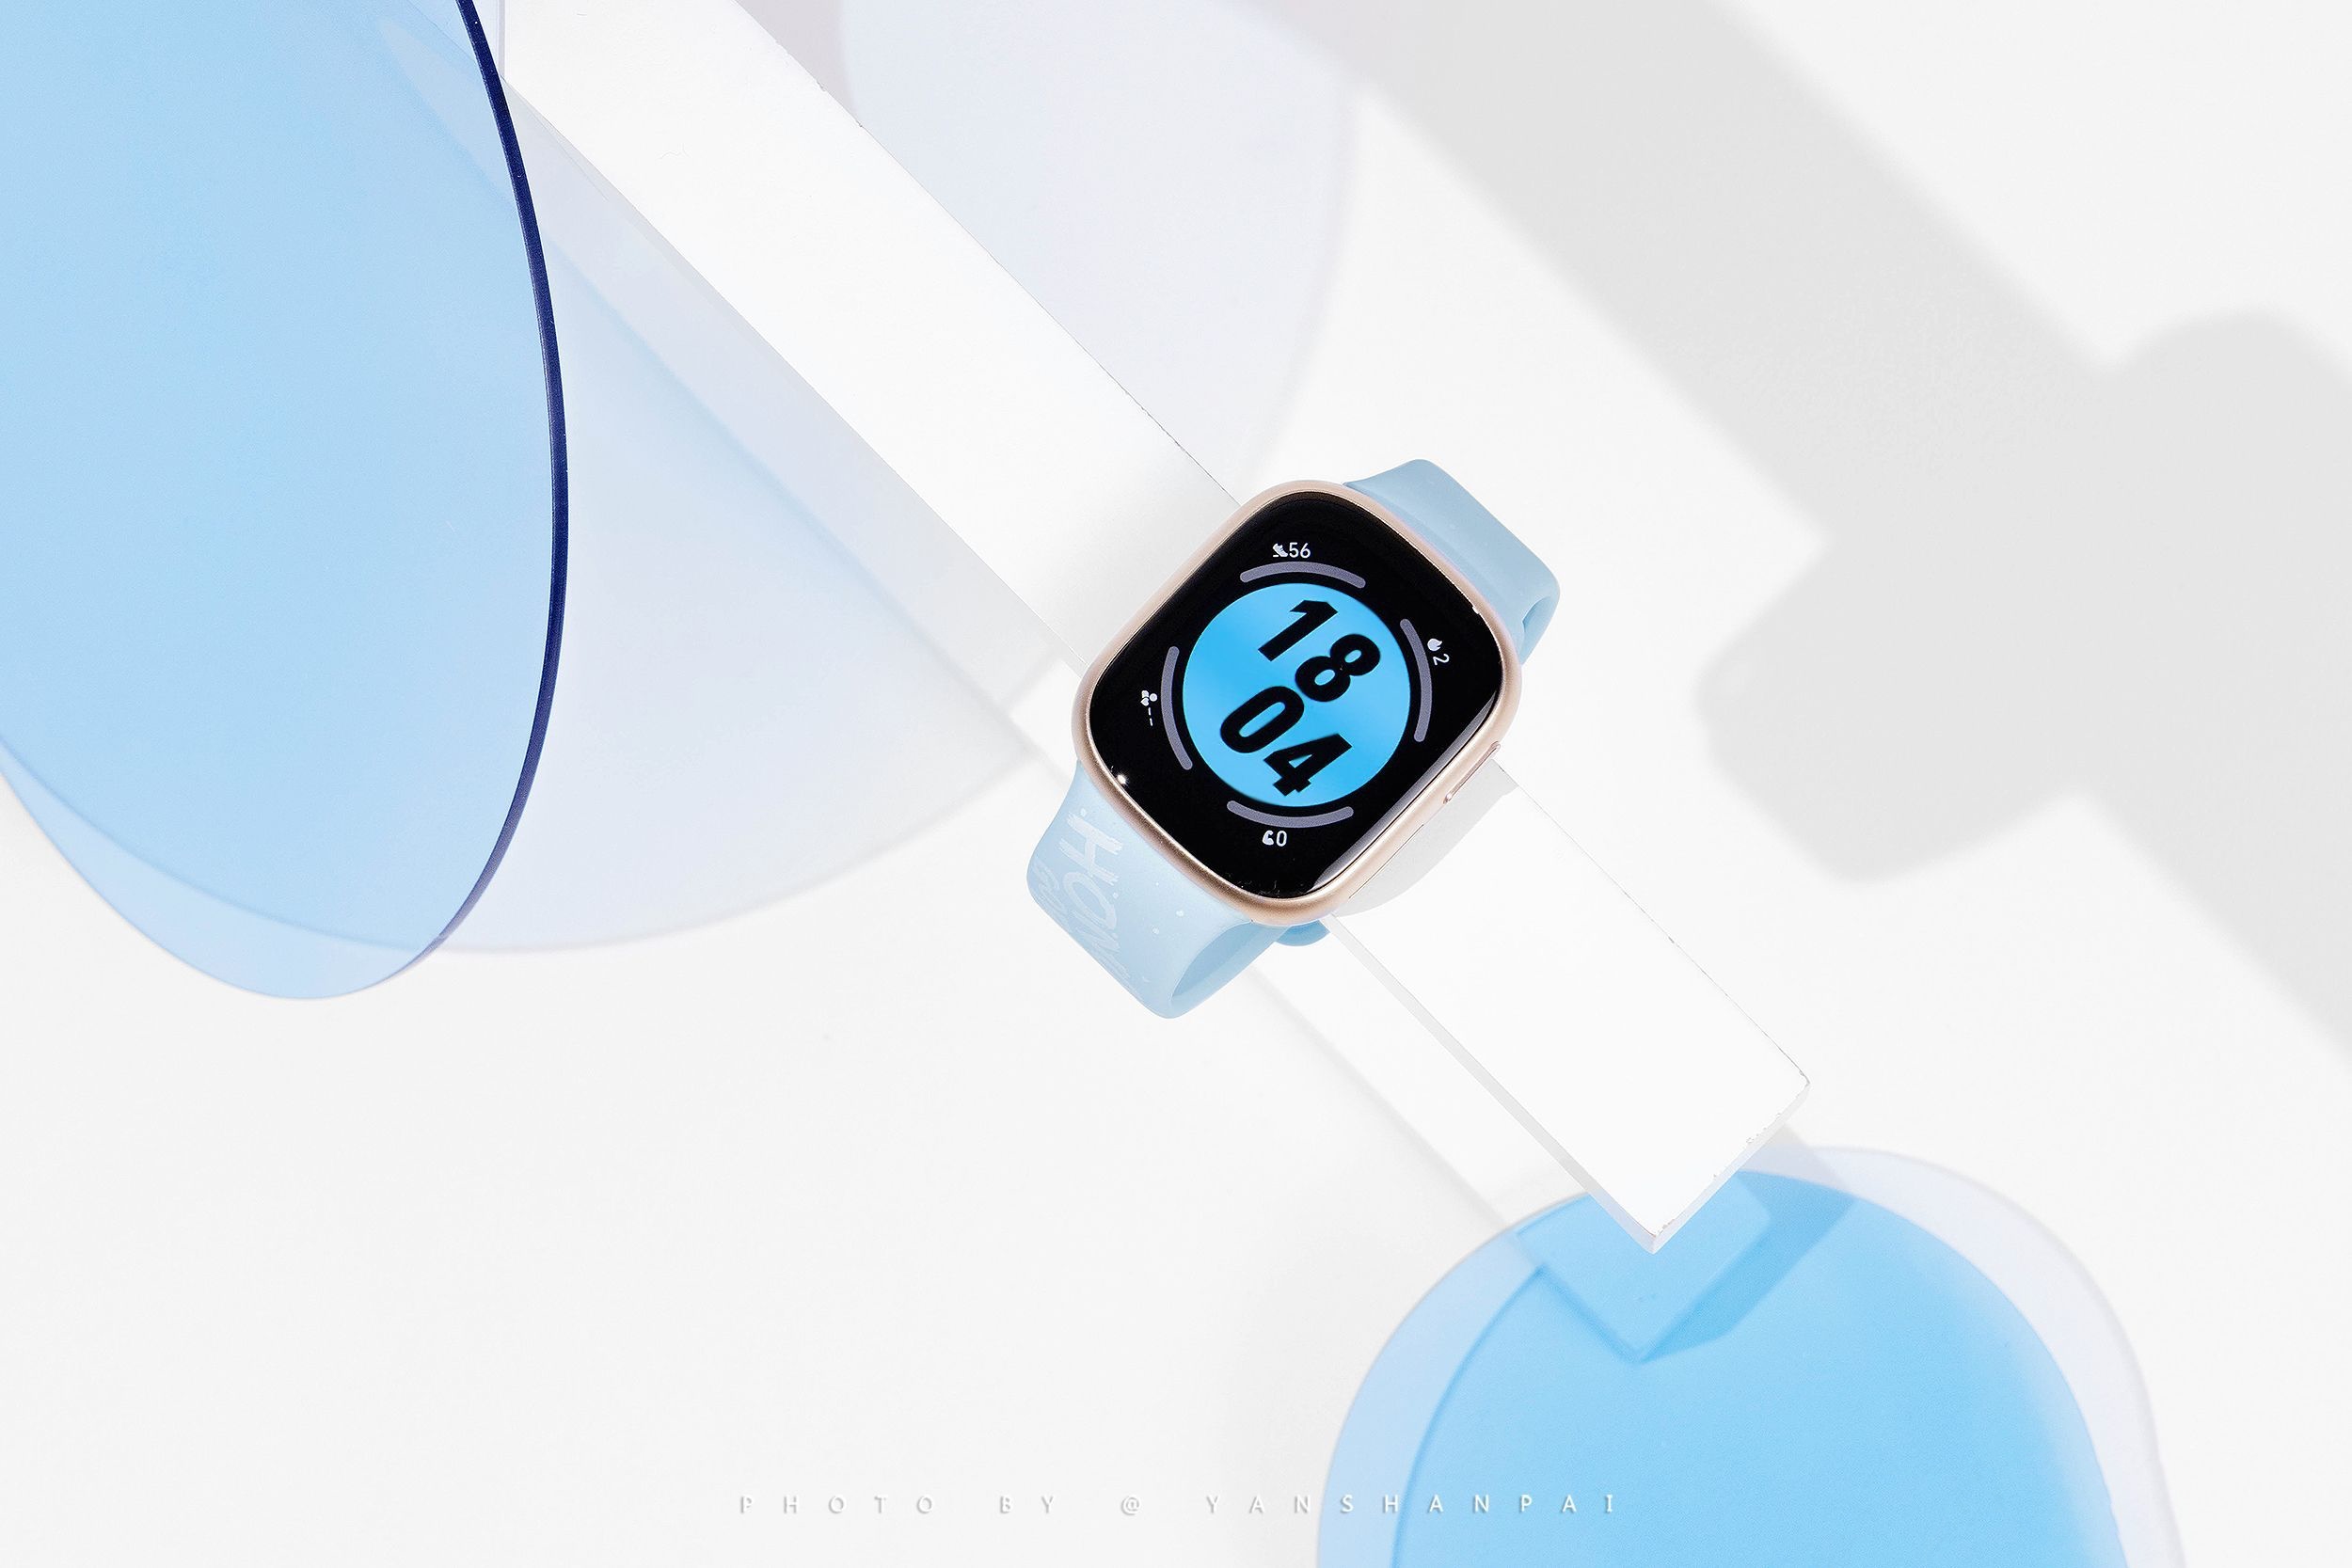 Kopia Apple Watch: w sieci pojawiły się zdjęcia Honor Watch 4 na żywo